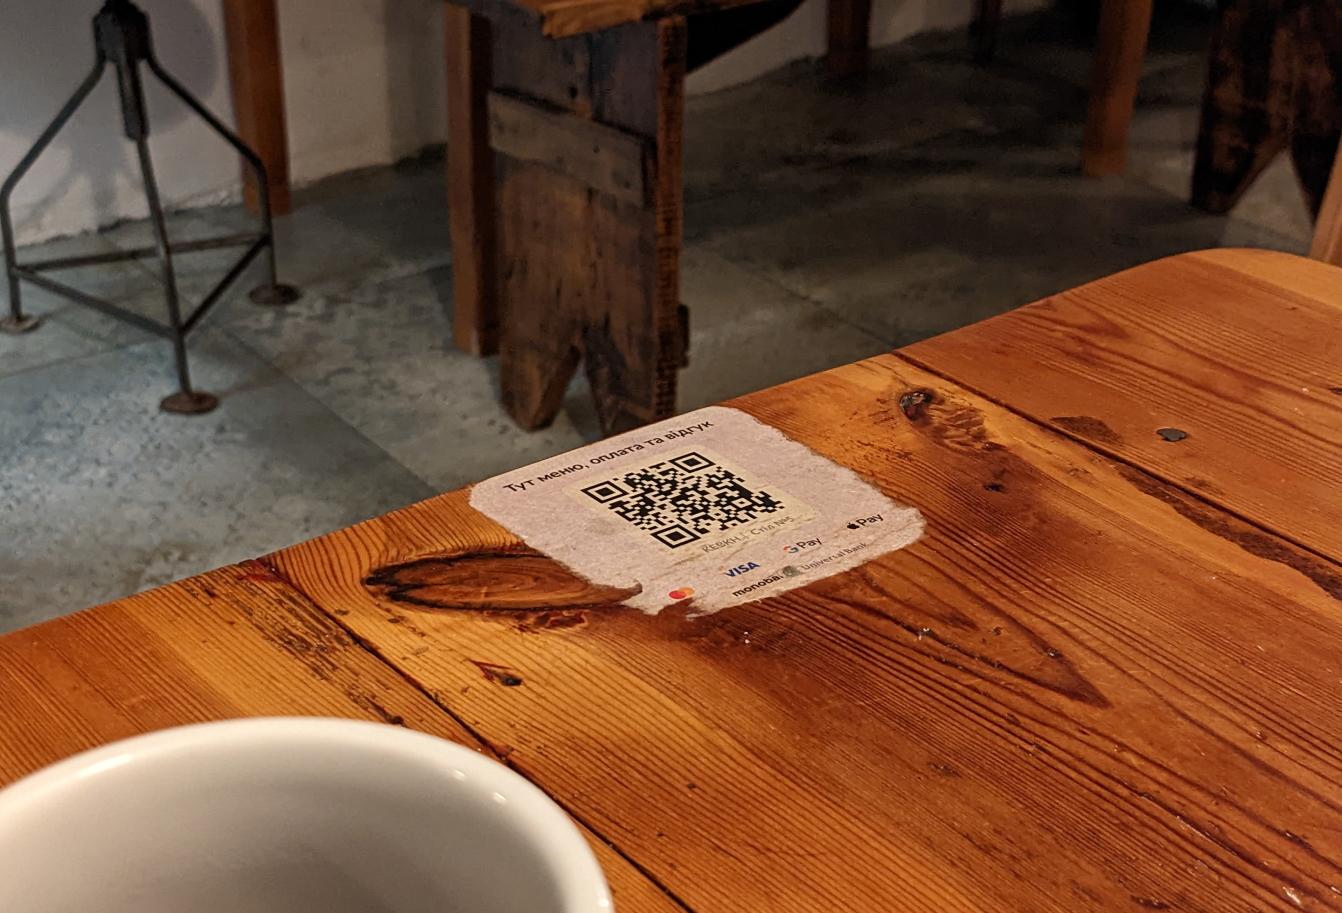 QR-код Expirenza by mono для расчетов, меню и отзывов в кафе. Фото: Богдан Вальд